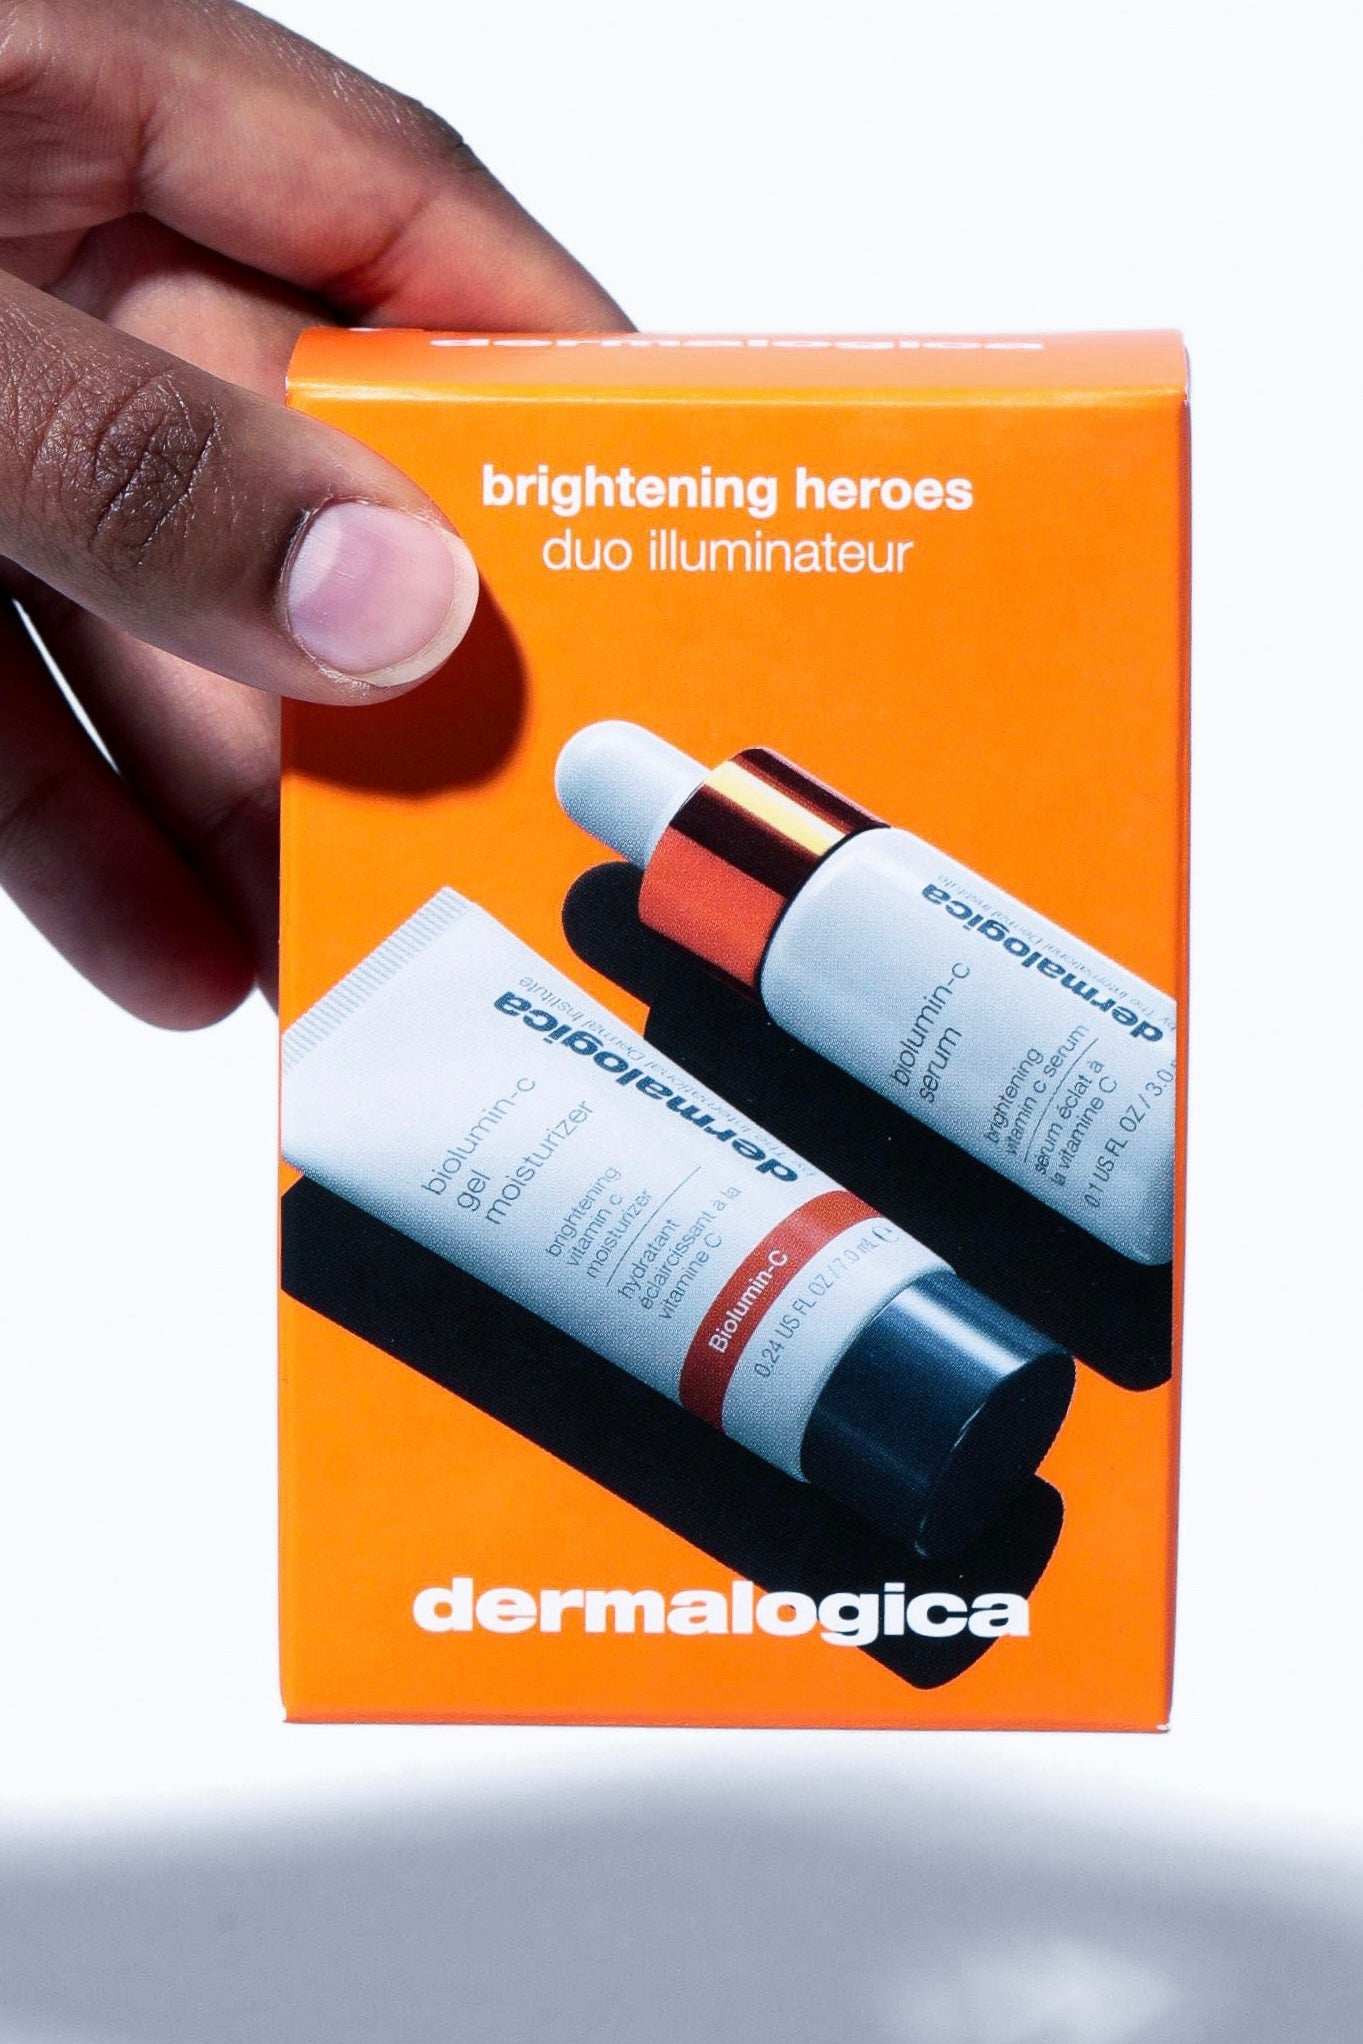 Dermalogica brightening heroes kit